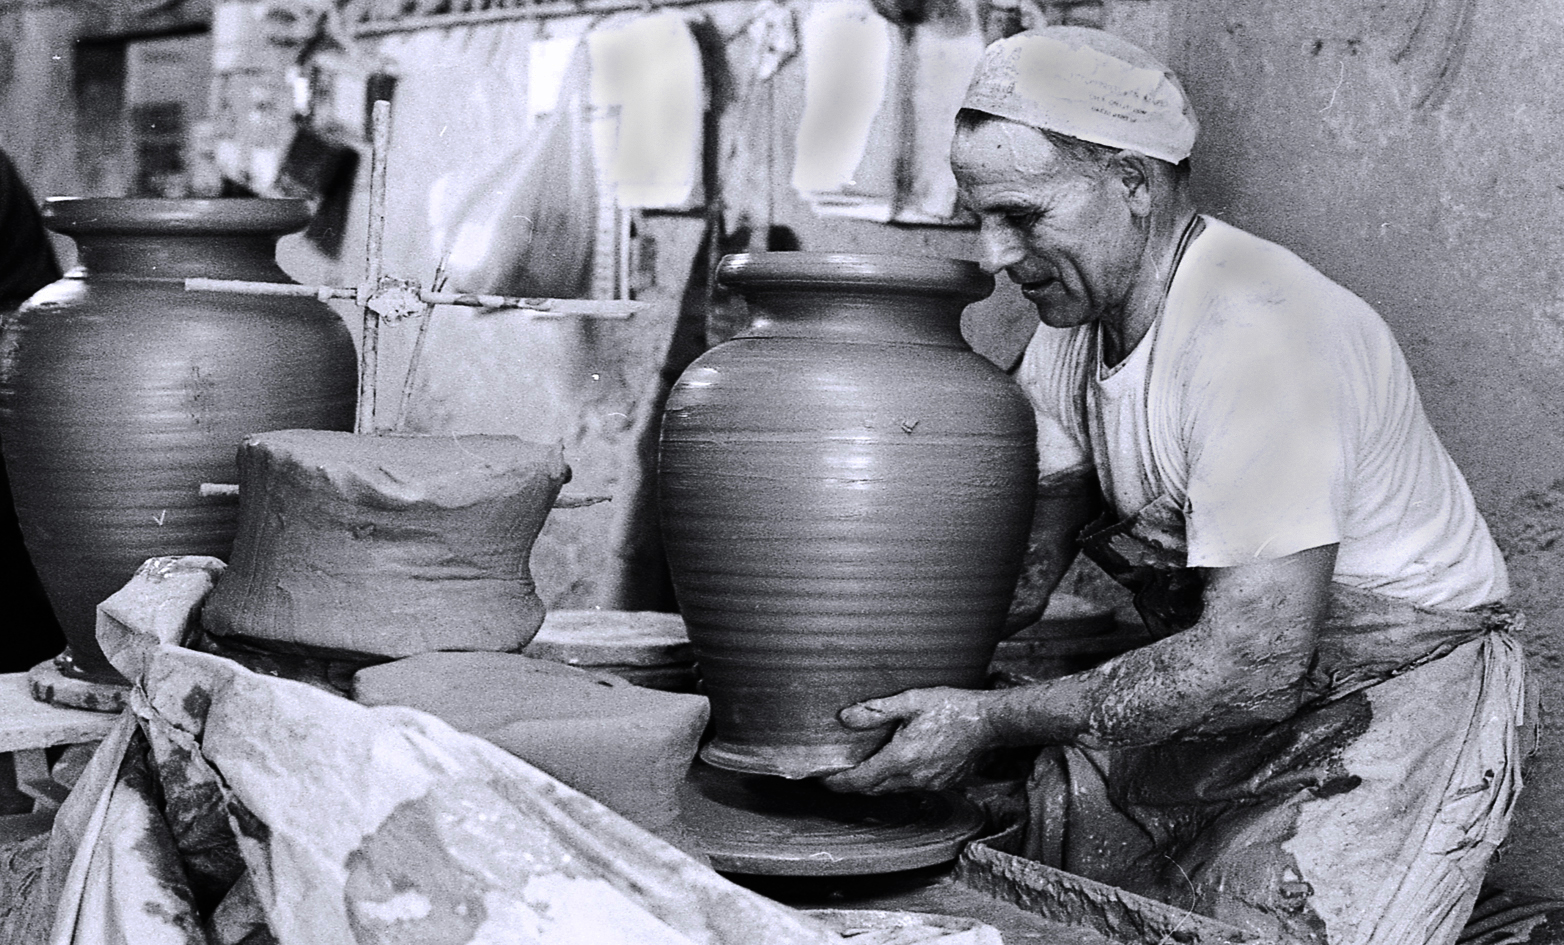 Mostra online di Carla Paci "Lavorando la ceramica" - 4. Il vaso finito